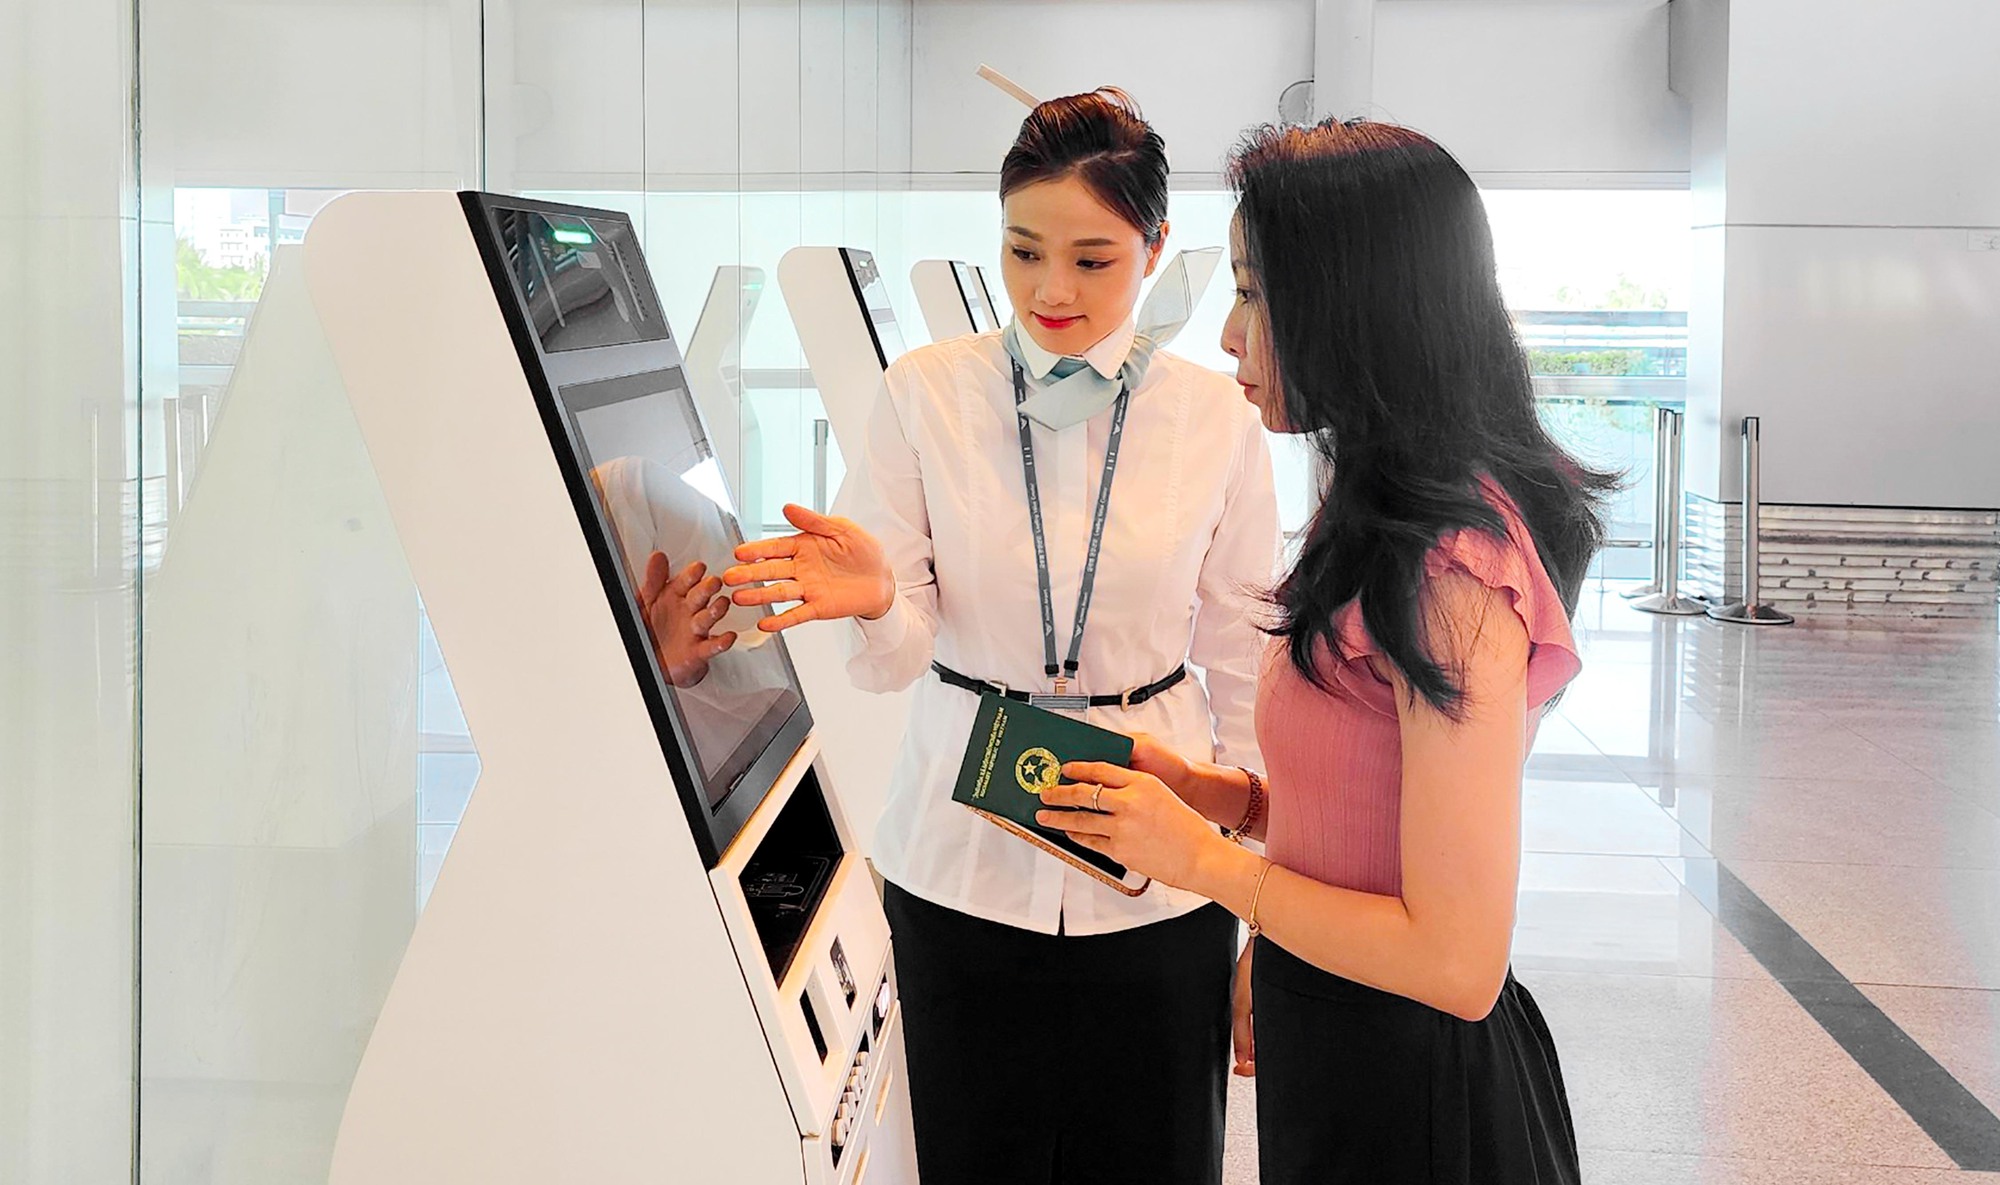 Du khách chỉ mất 2 phút để tự làm thủ tục bay tại sân bay Đà Nẵng - Ảnh 1.